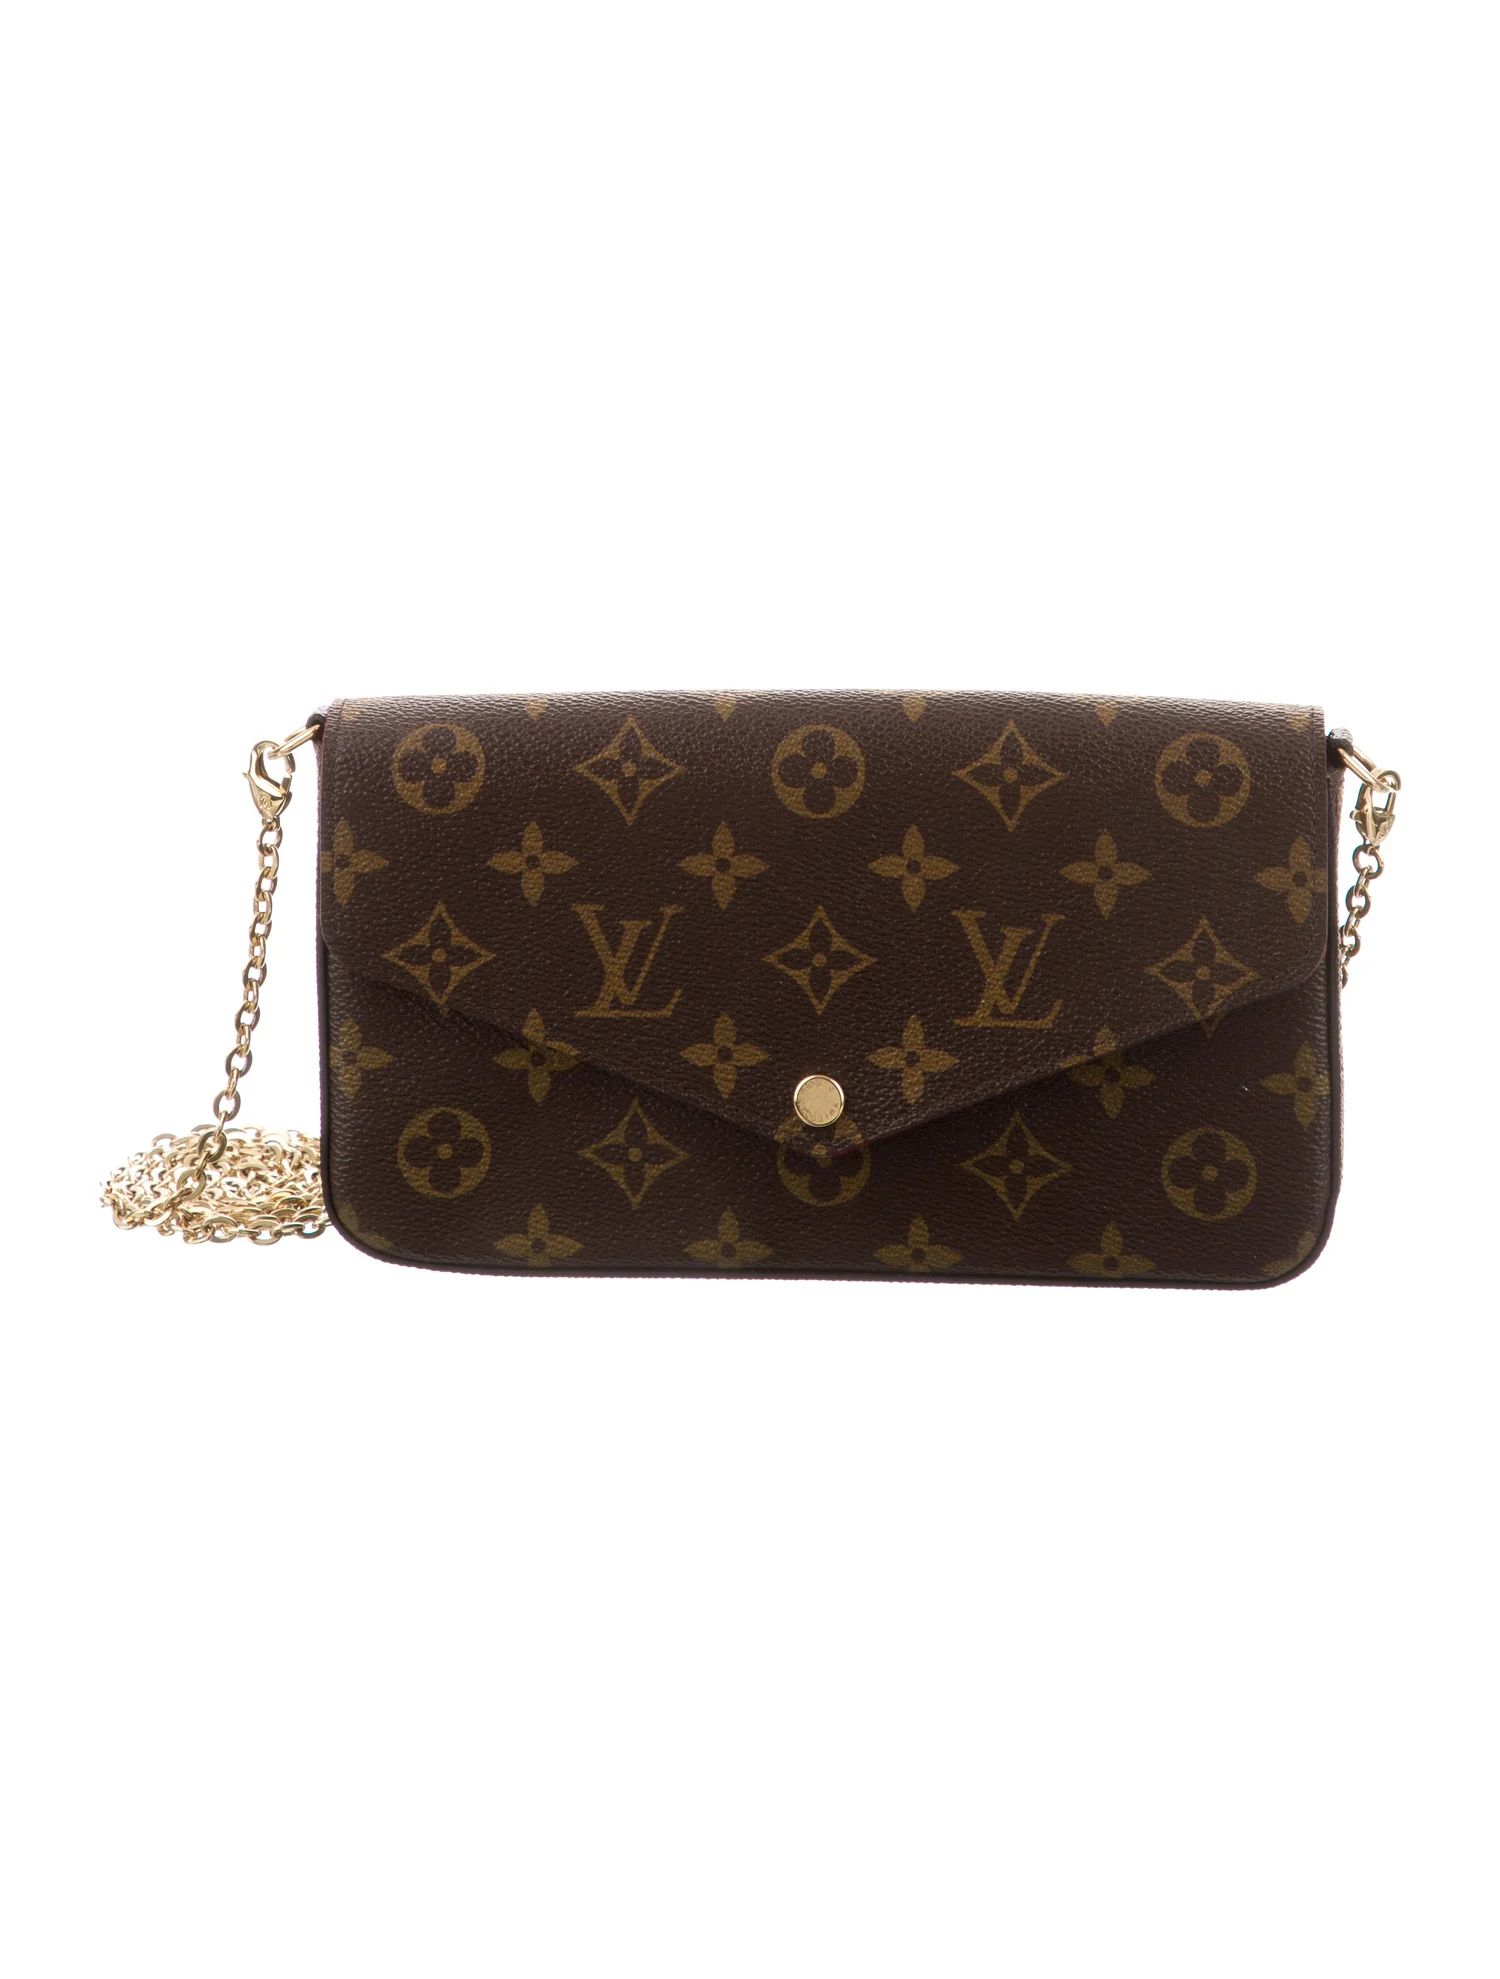 Louis Vuitton 2018 Monogram Pochette Felicie - Handbags -
          LOU260295 | The RealReal | The RealReal